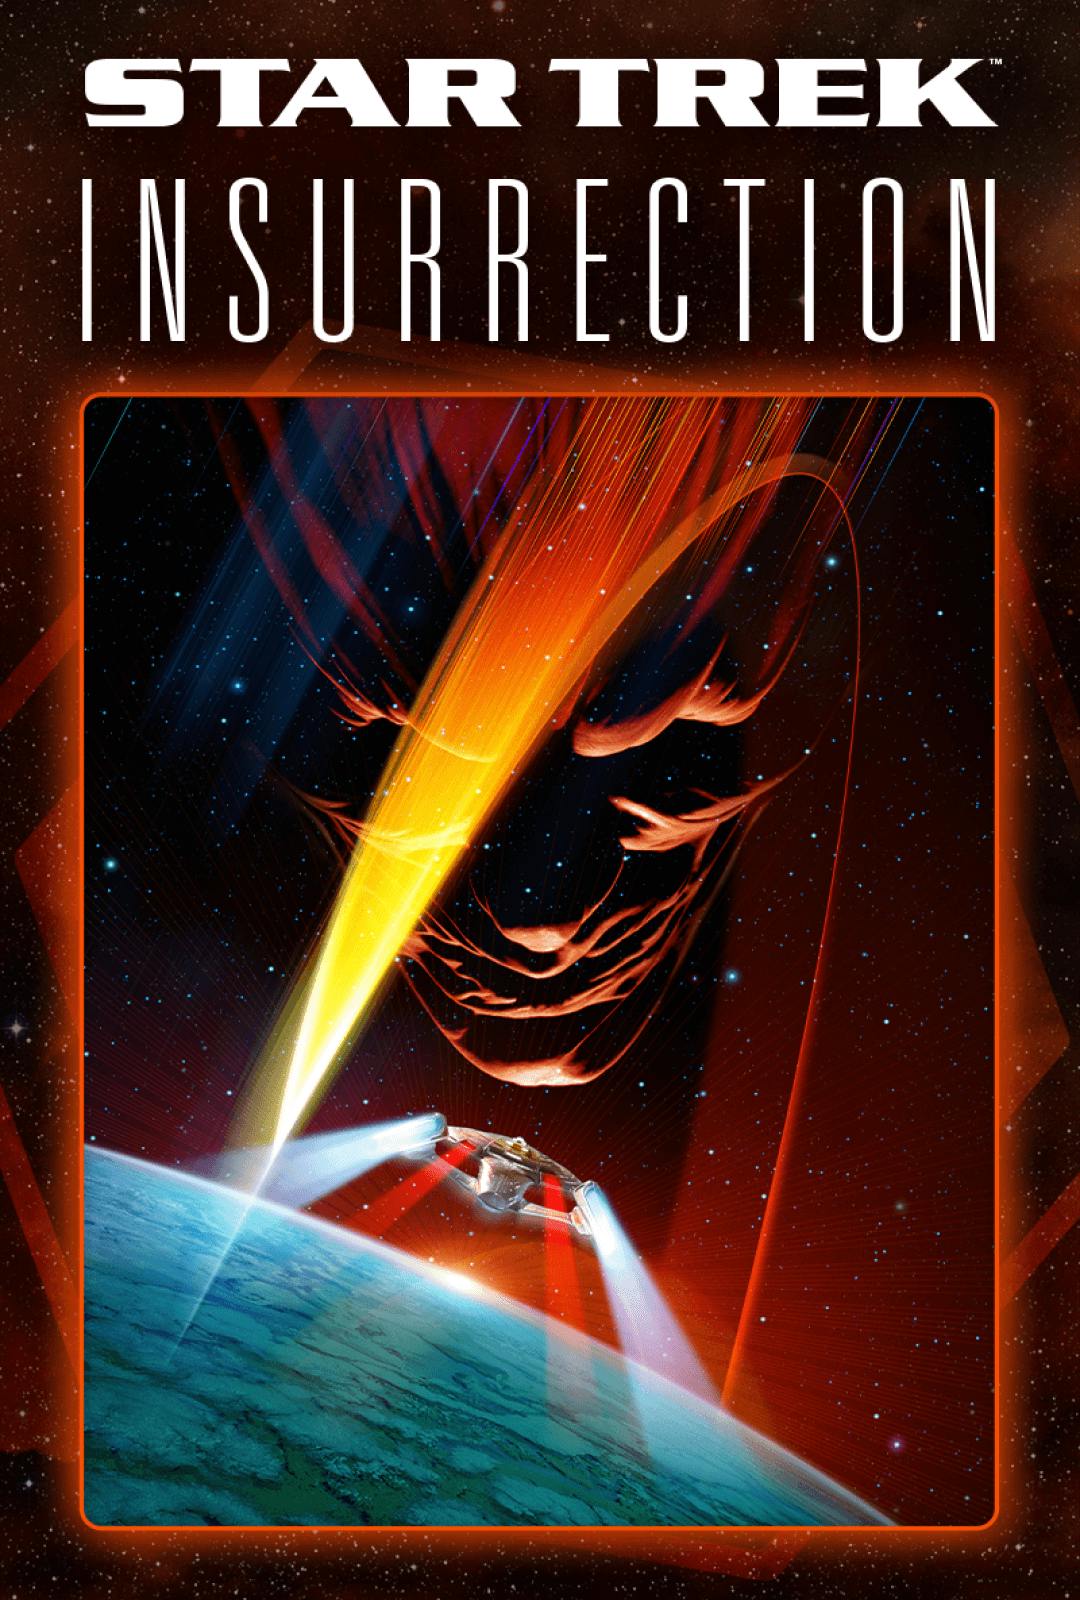 Poster art for Star Trek: Insurrection